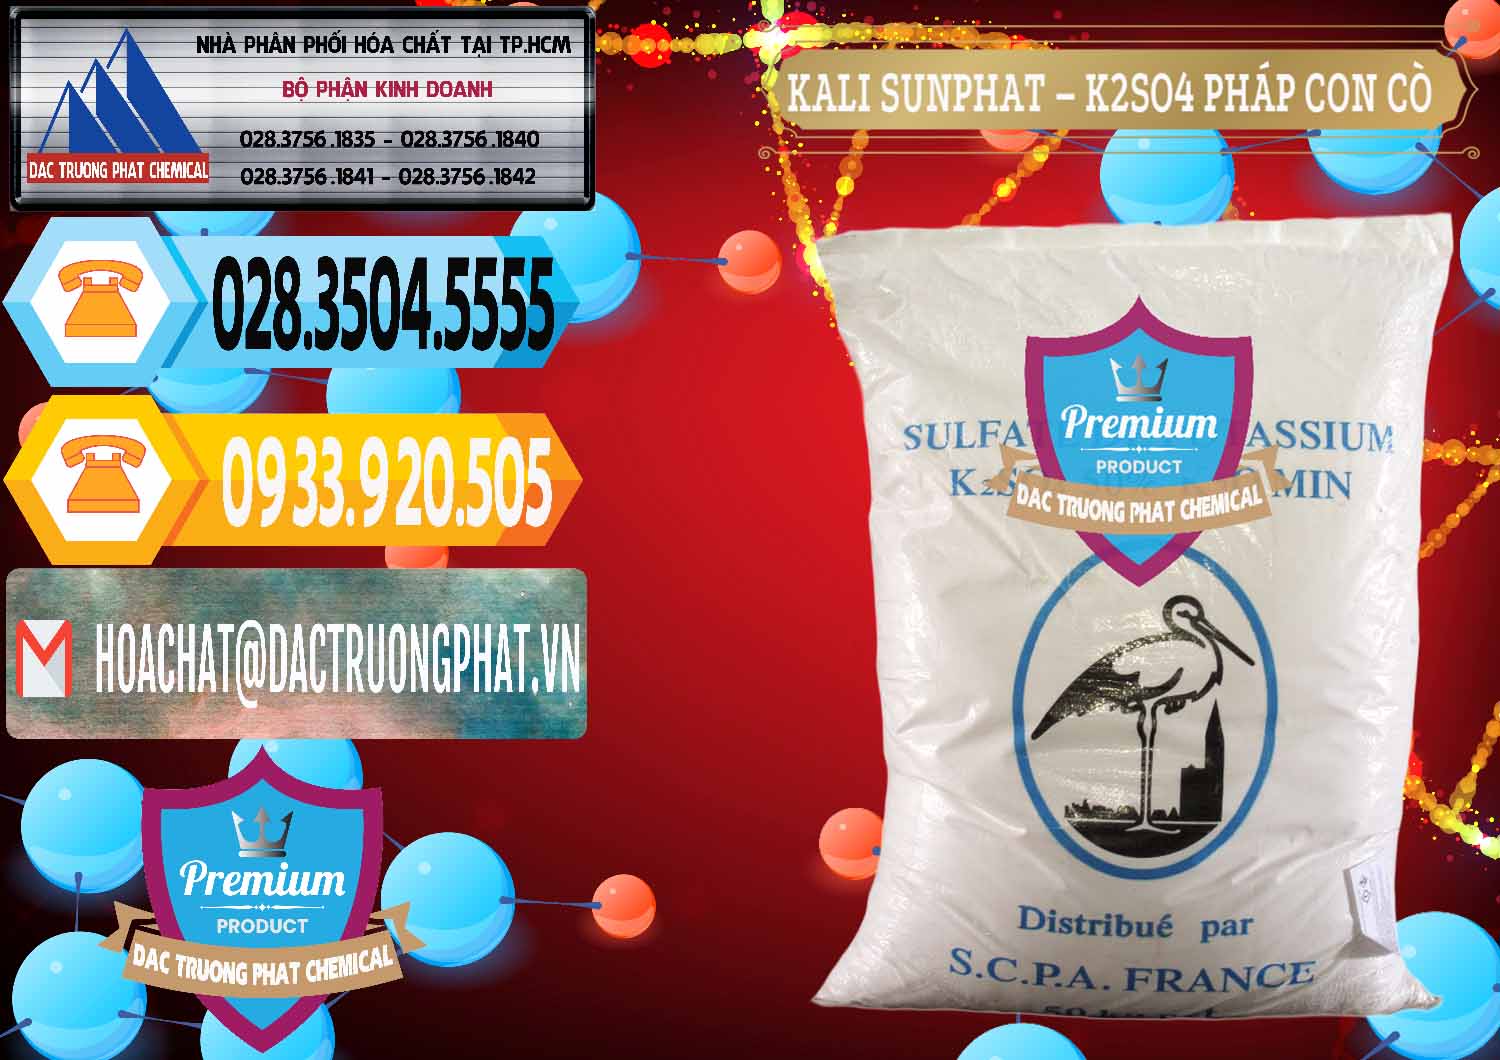 Bán ( phân phối ) Kali Sunphat – K2SO4 Con Cò Pháp France - 0083 - Chuyên cung cấp _ kinh doanh hóa chất tại TP.HCM - hoachattayrua.net